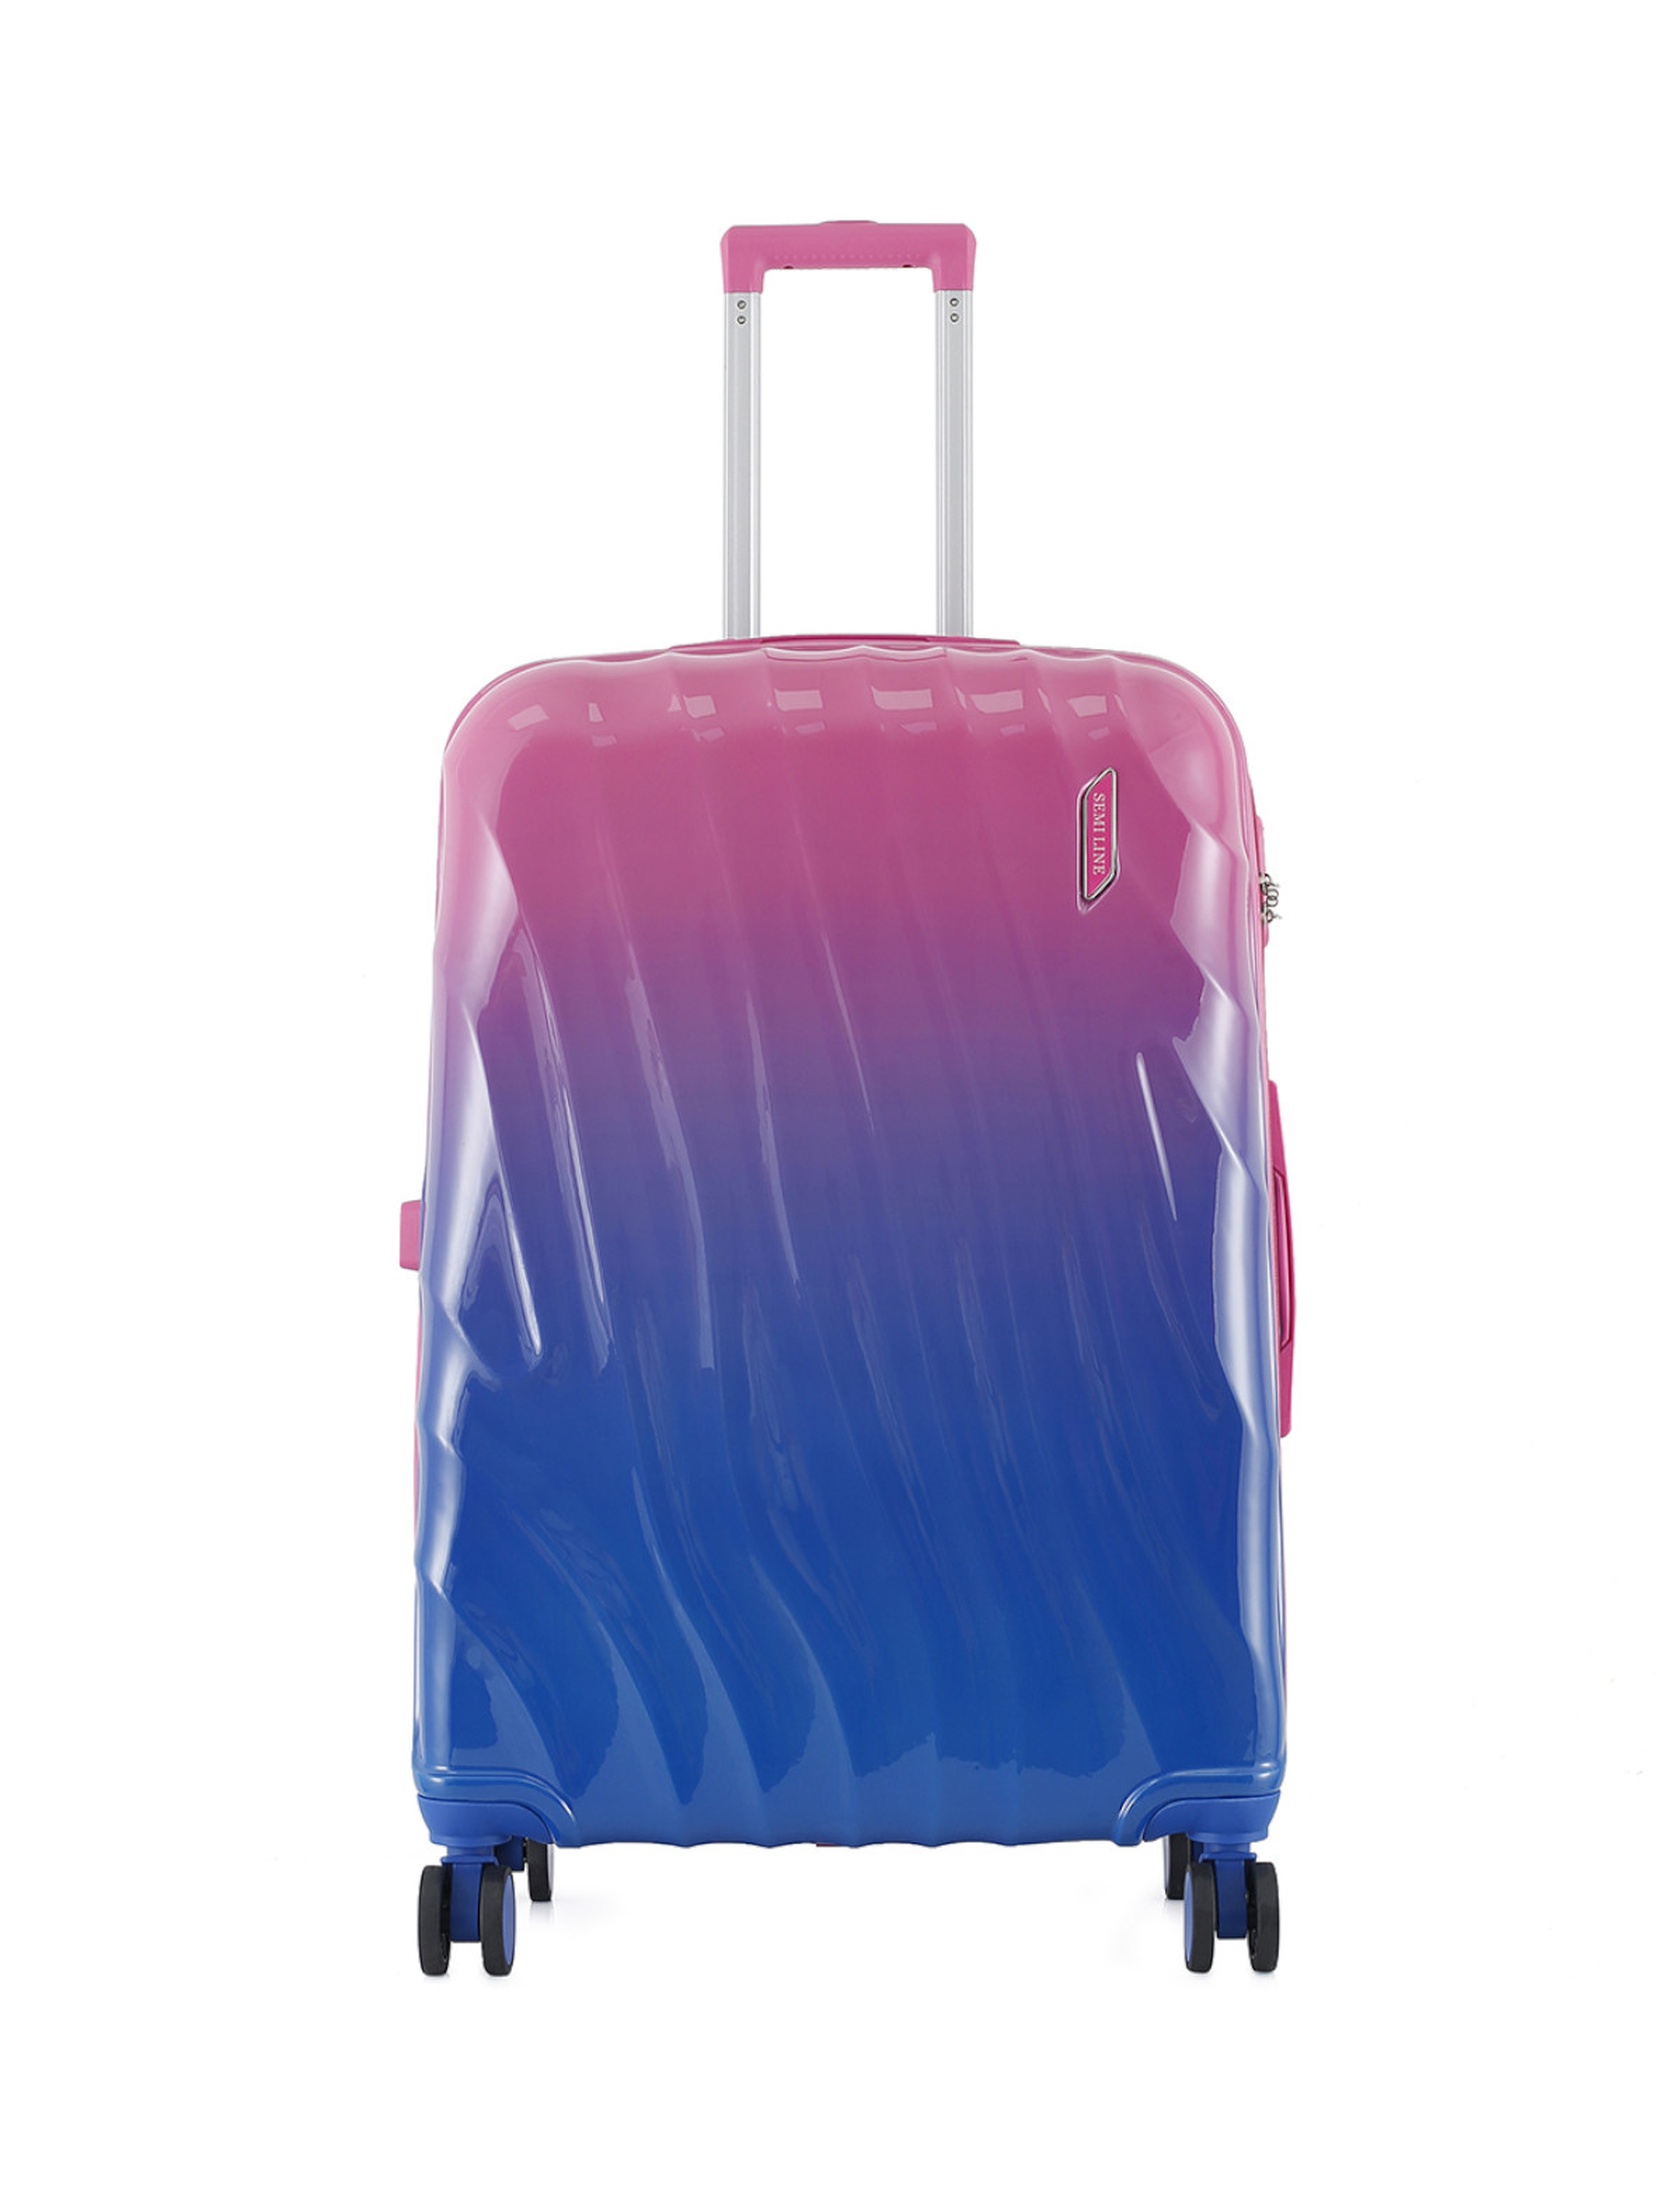 Duża twarda walizka 104 L - 53,5x29x77cm PC+ABS